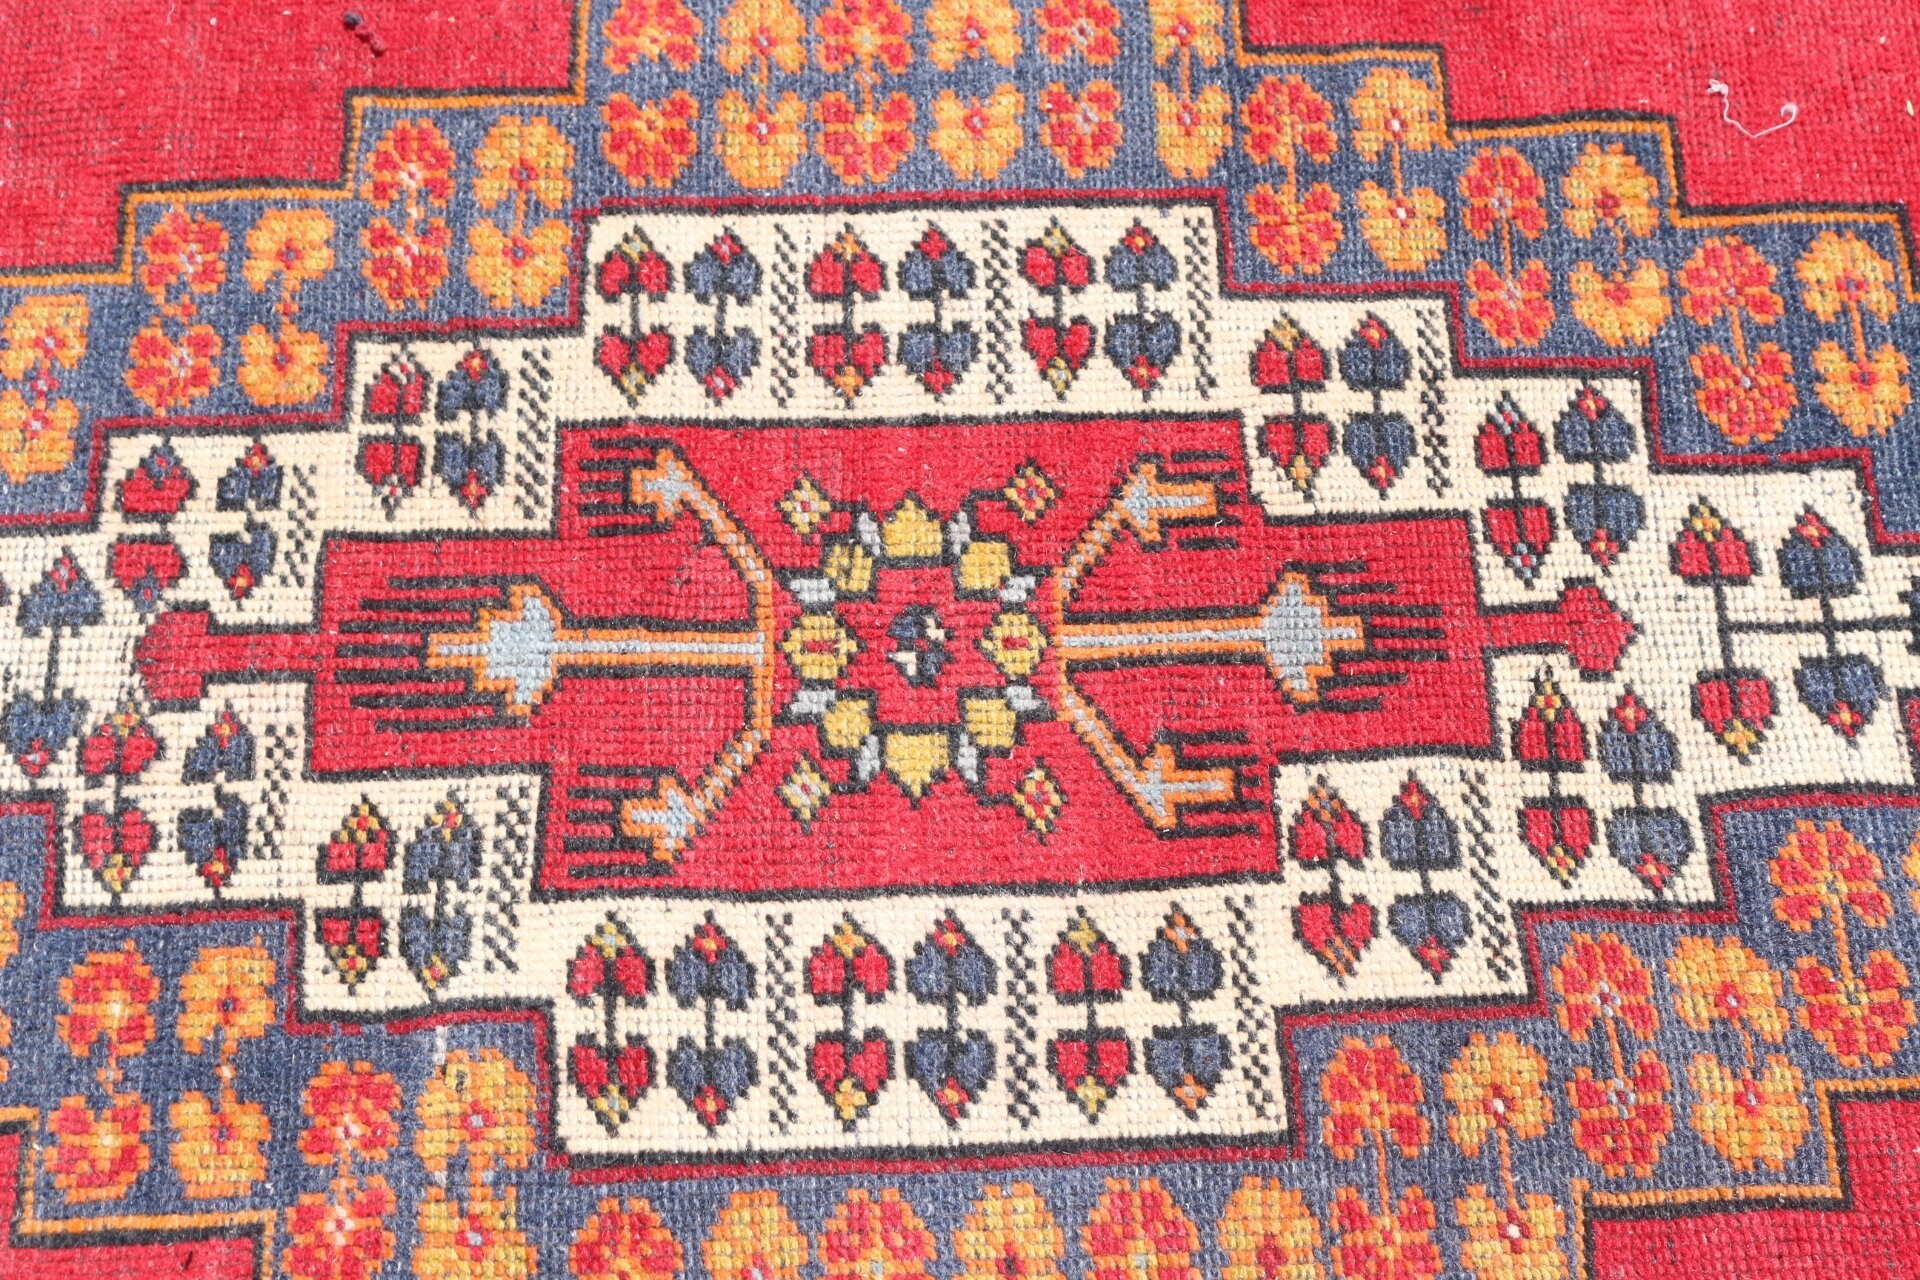 Red Cool Rug, Vintage Rug, Oriental Rugs, Bedroom Rug, 4.8x9.3 ft Large Rug, Large Wool Rug Rugs, Dining Room Rugs, Wool Rug, Turkish Rugs